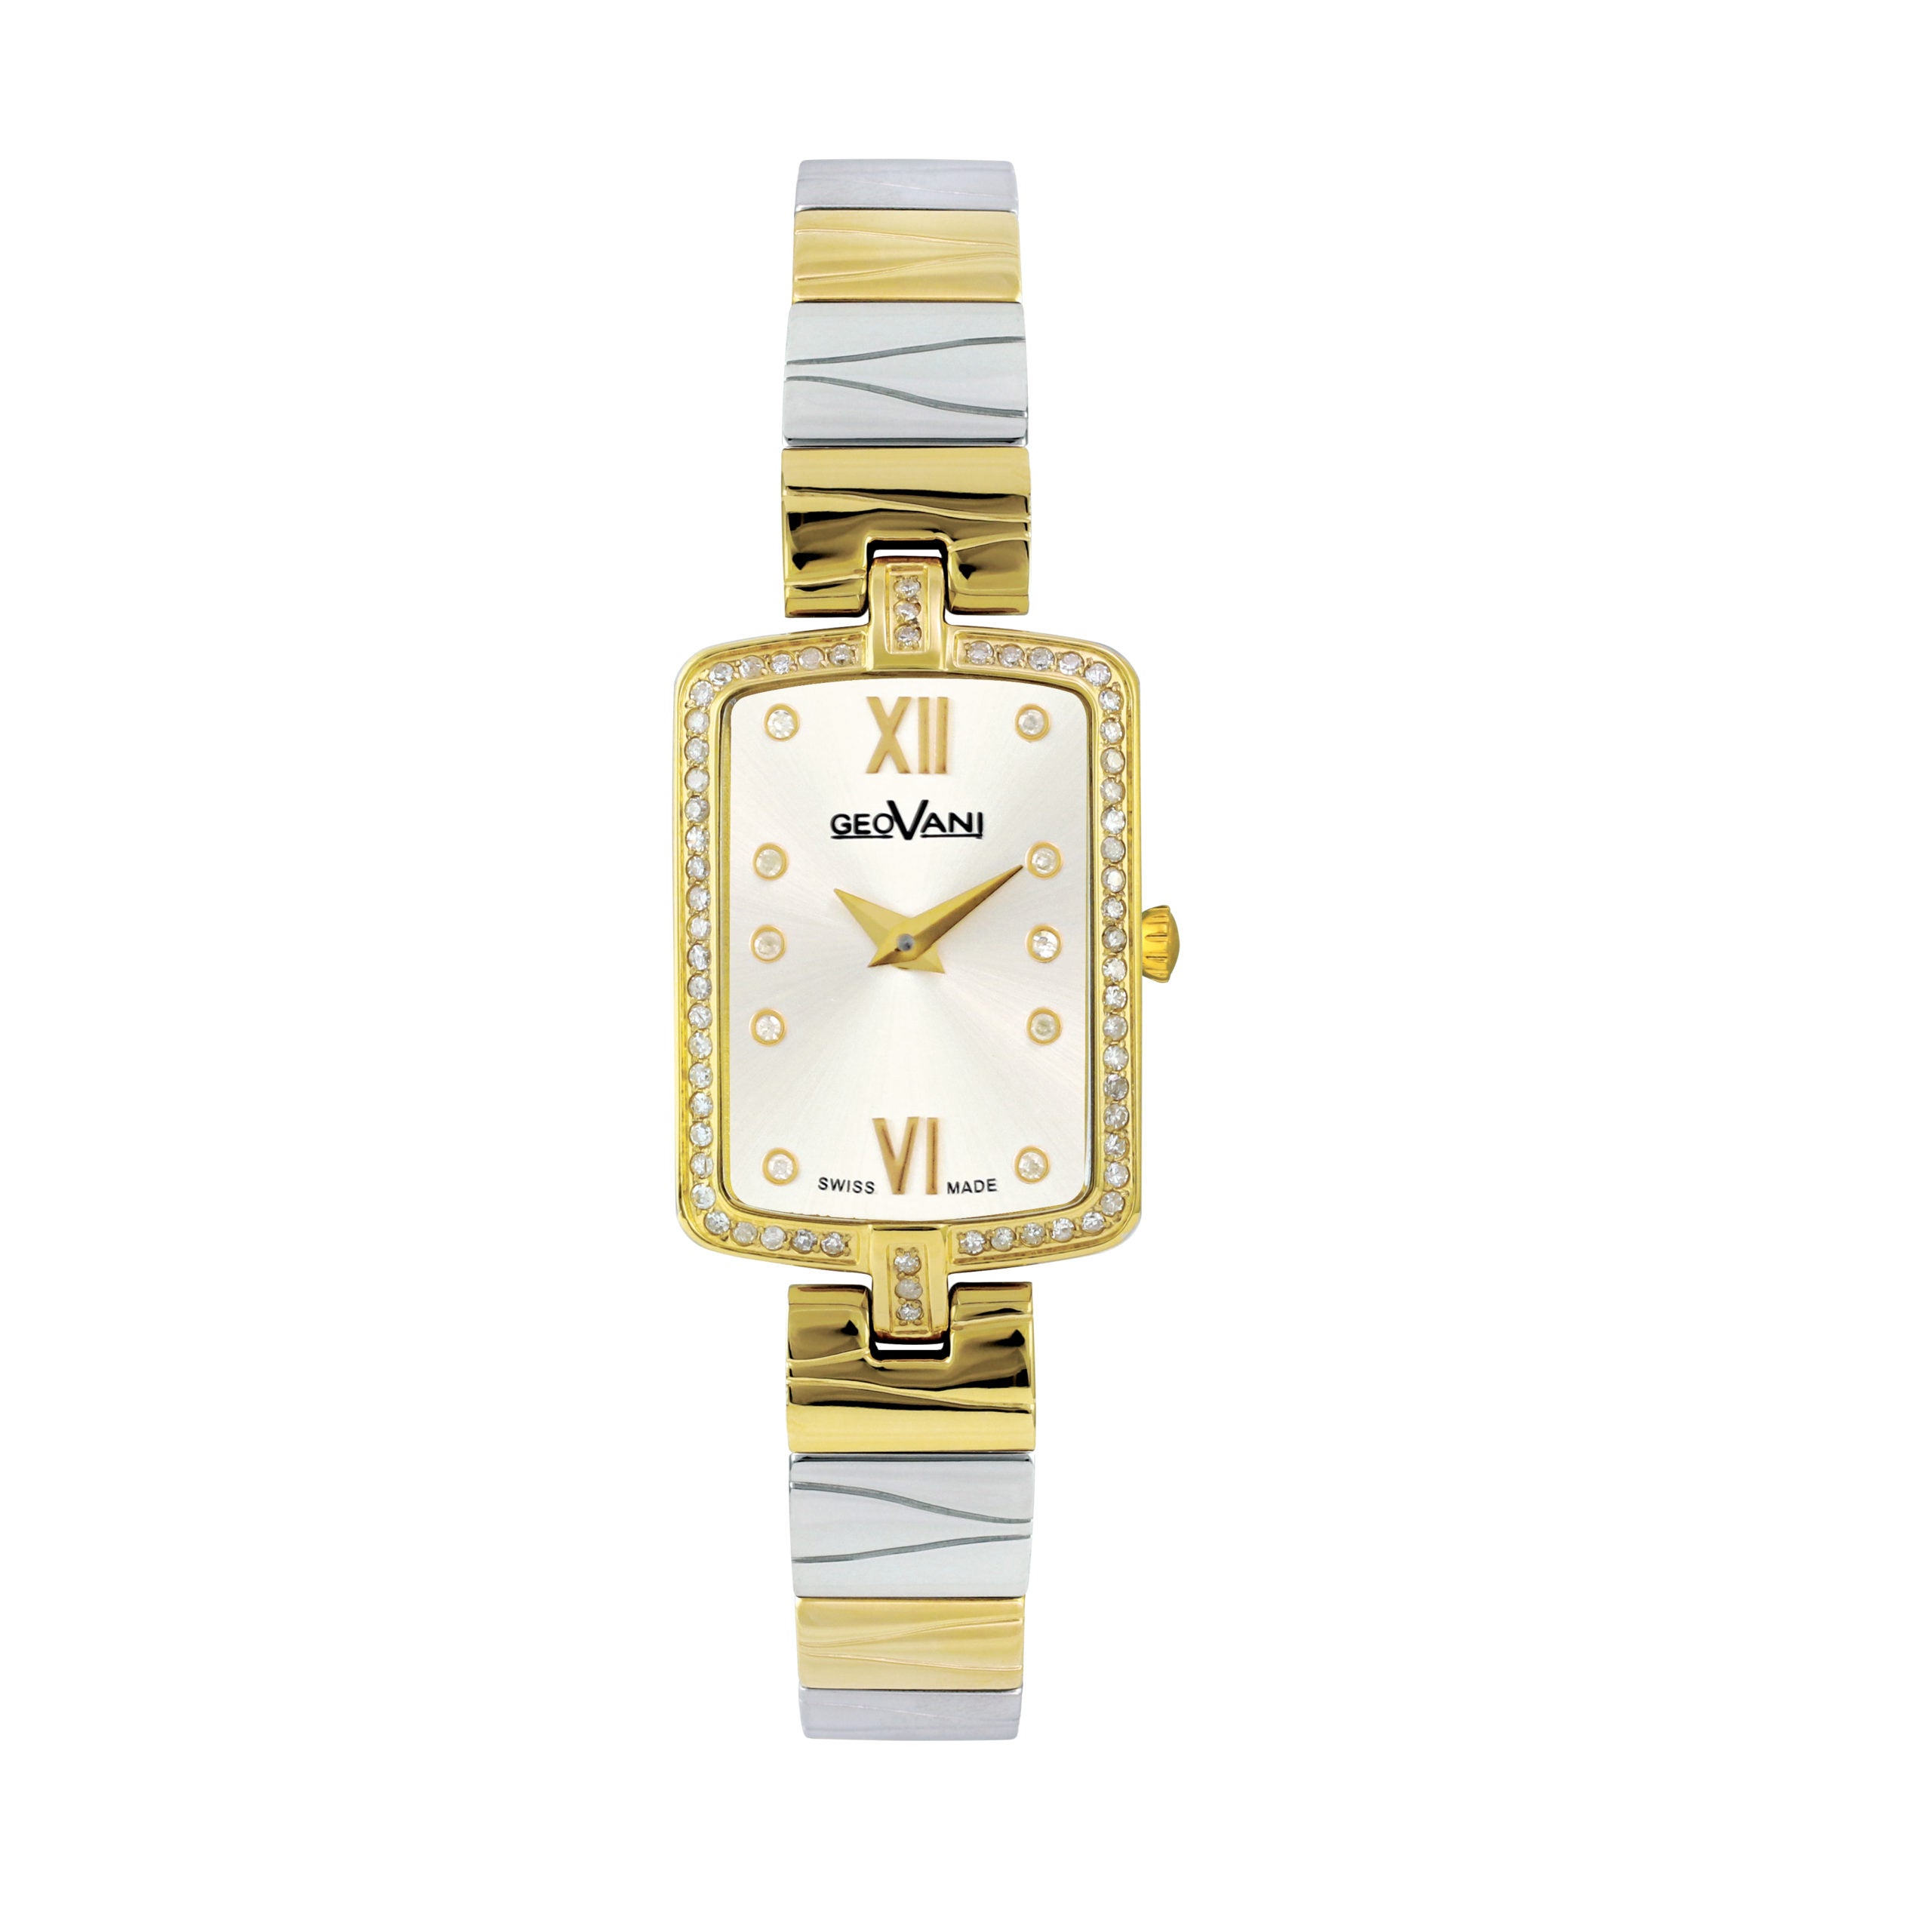 Giovanni Women's Swiss Quartz Watch with White Dial - GEO-0007